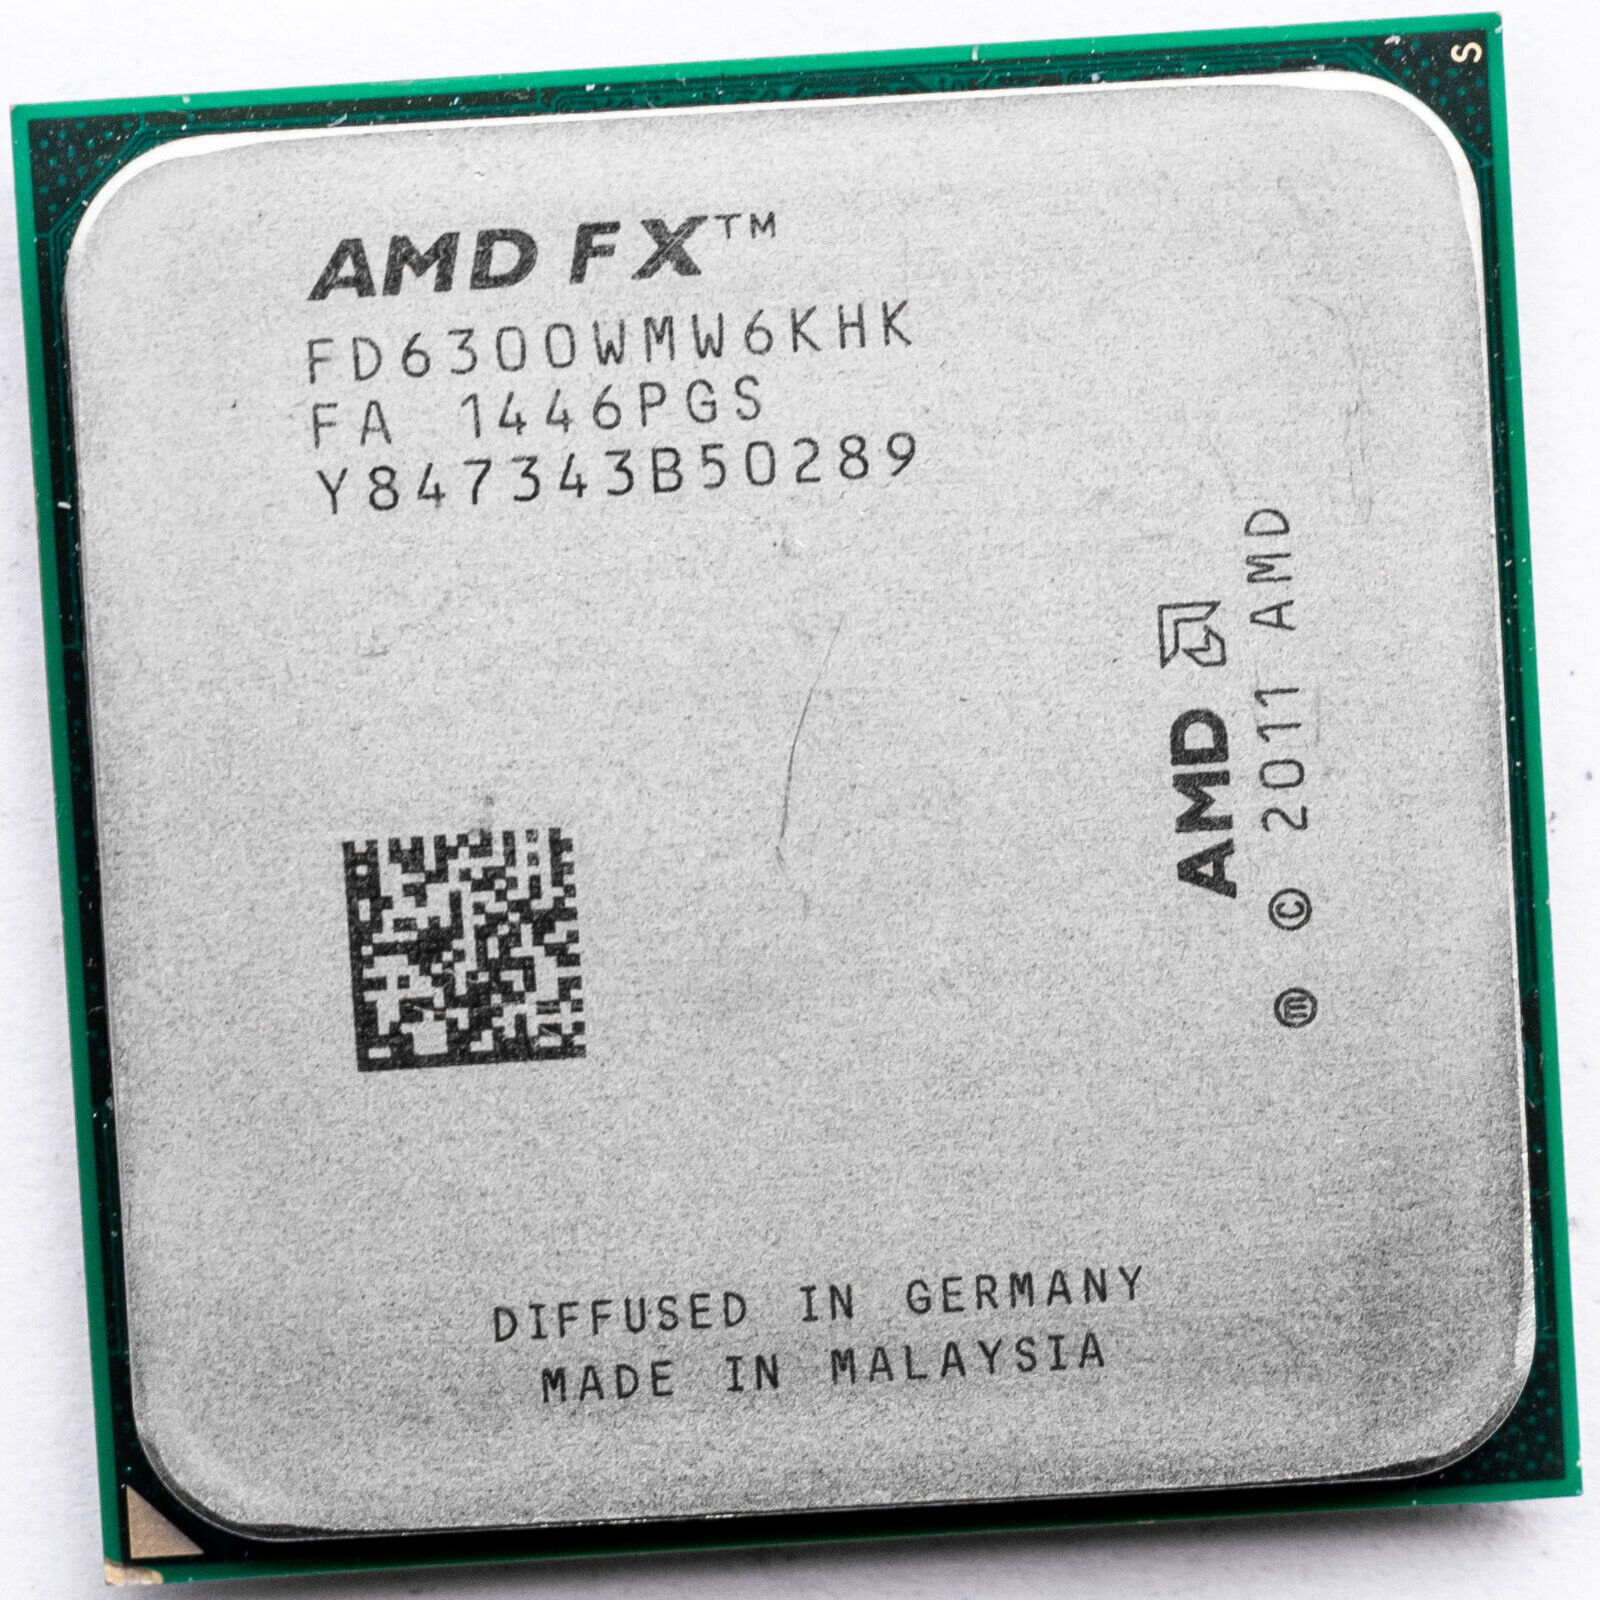 AMD FX-6300 FD6300WMW6KHK AM3+ 3.5GHz Six Core Processor 8MB 95W Vishera